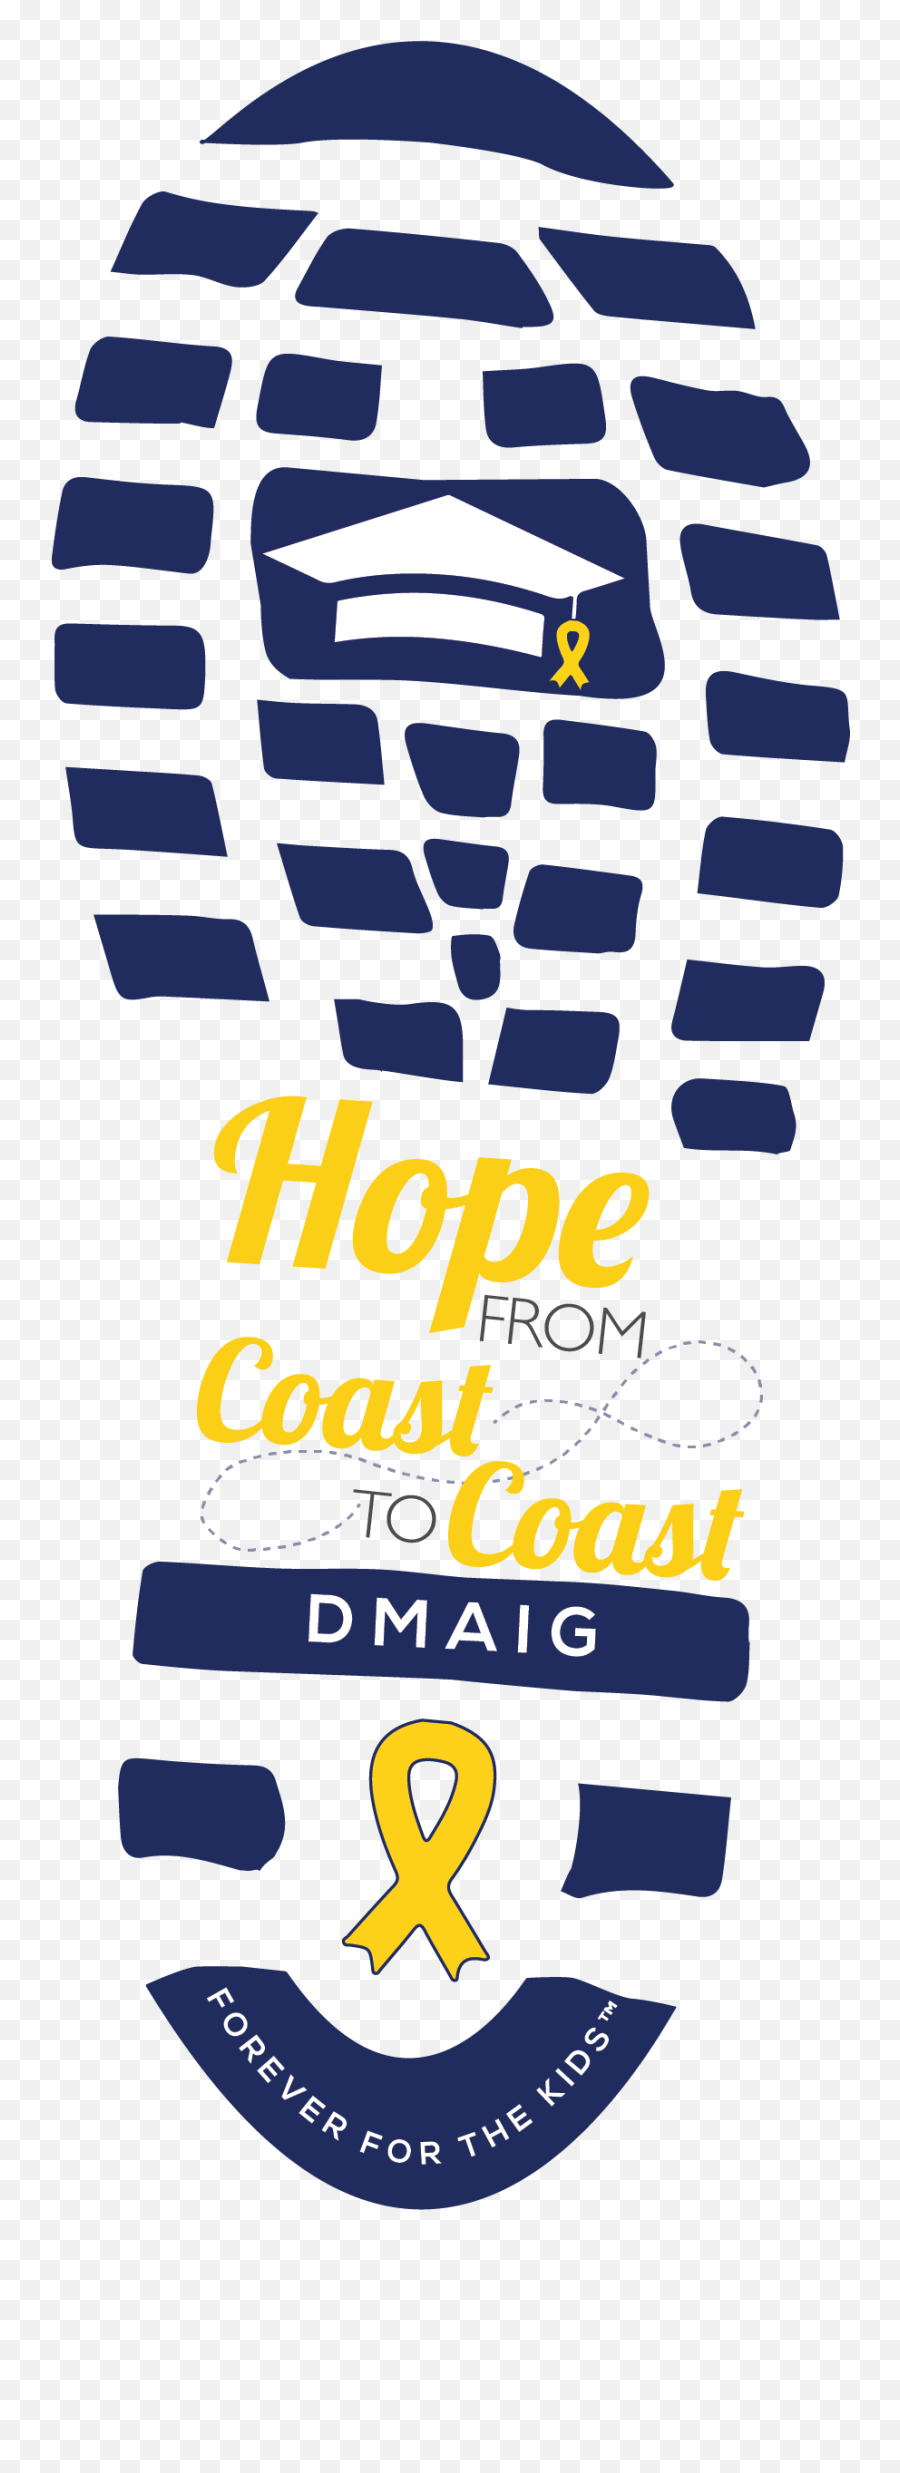 Hope From Coast To Coast 2021 Emoji,Penn State Emoji Keyboard Facebook